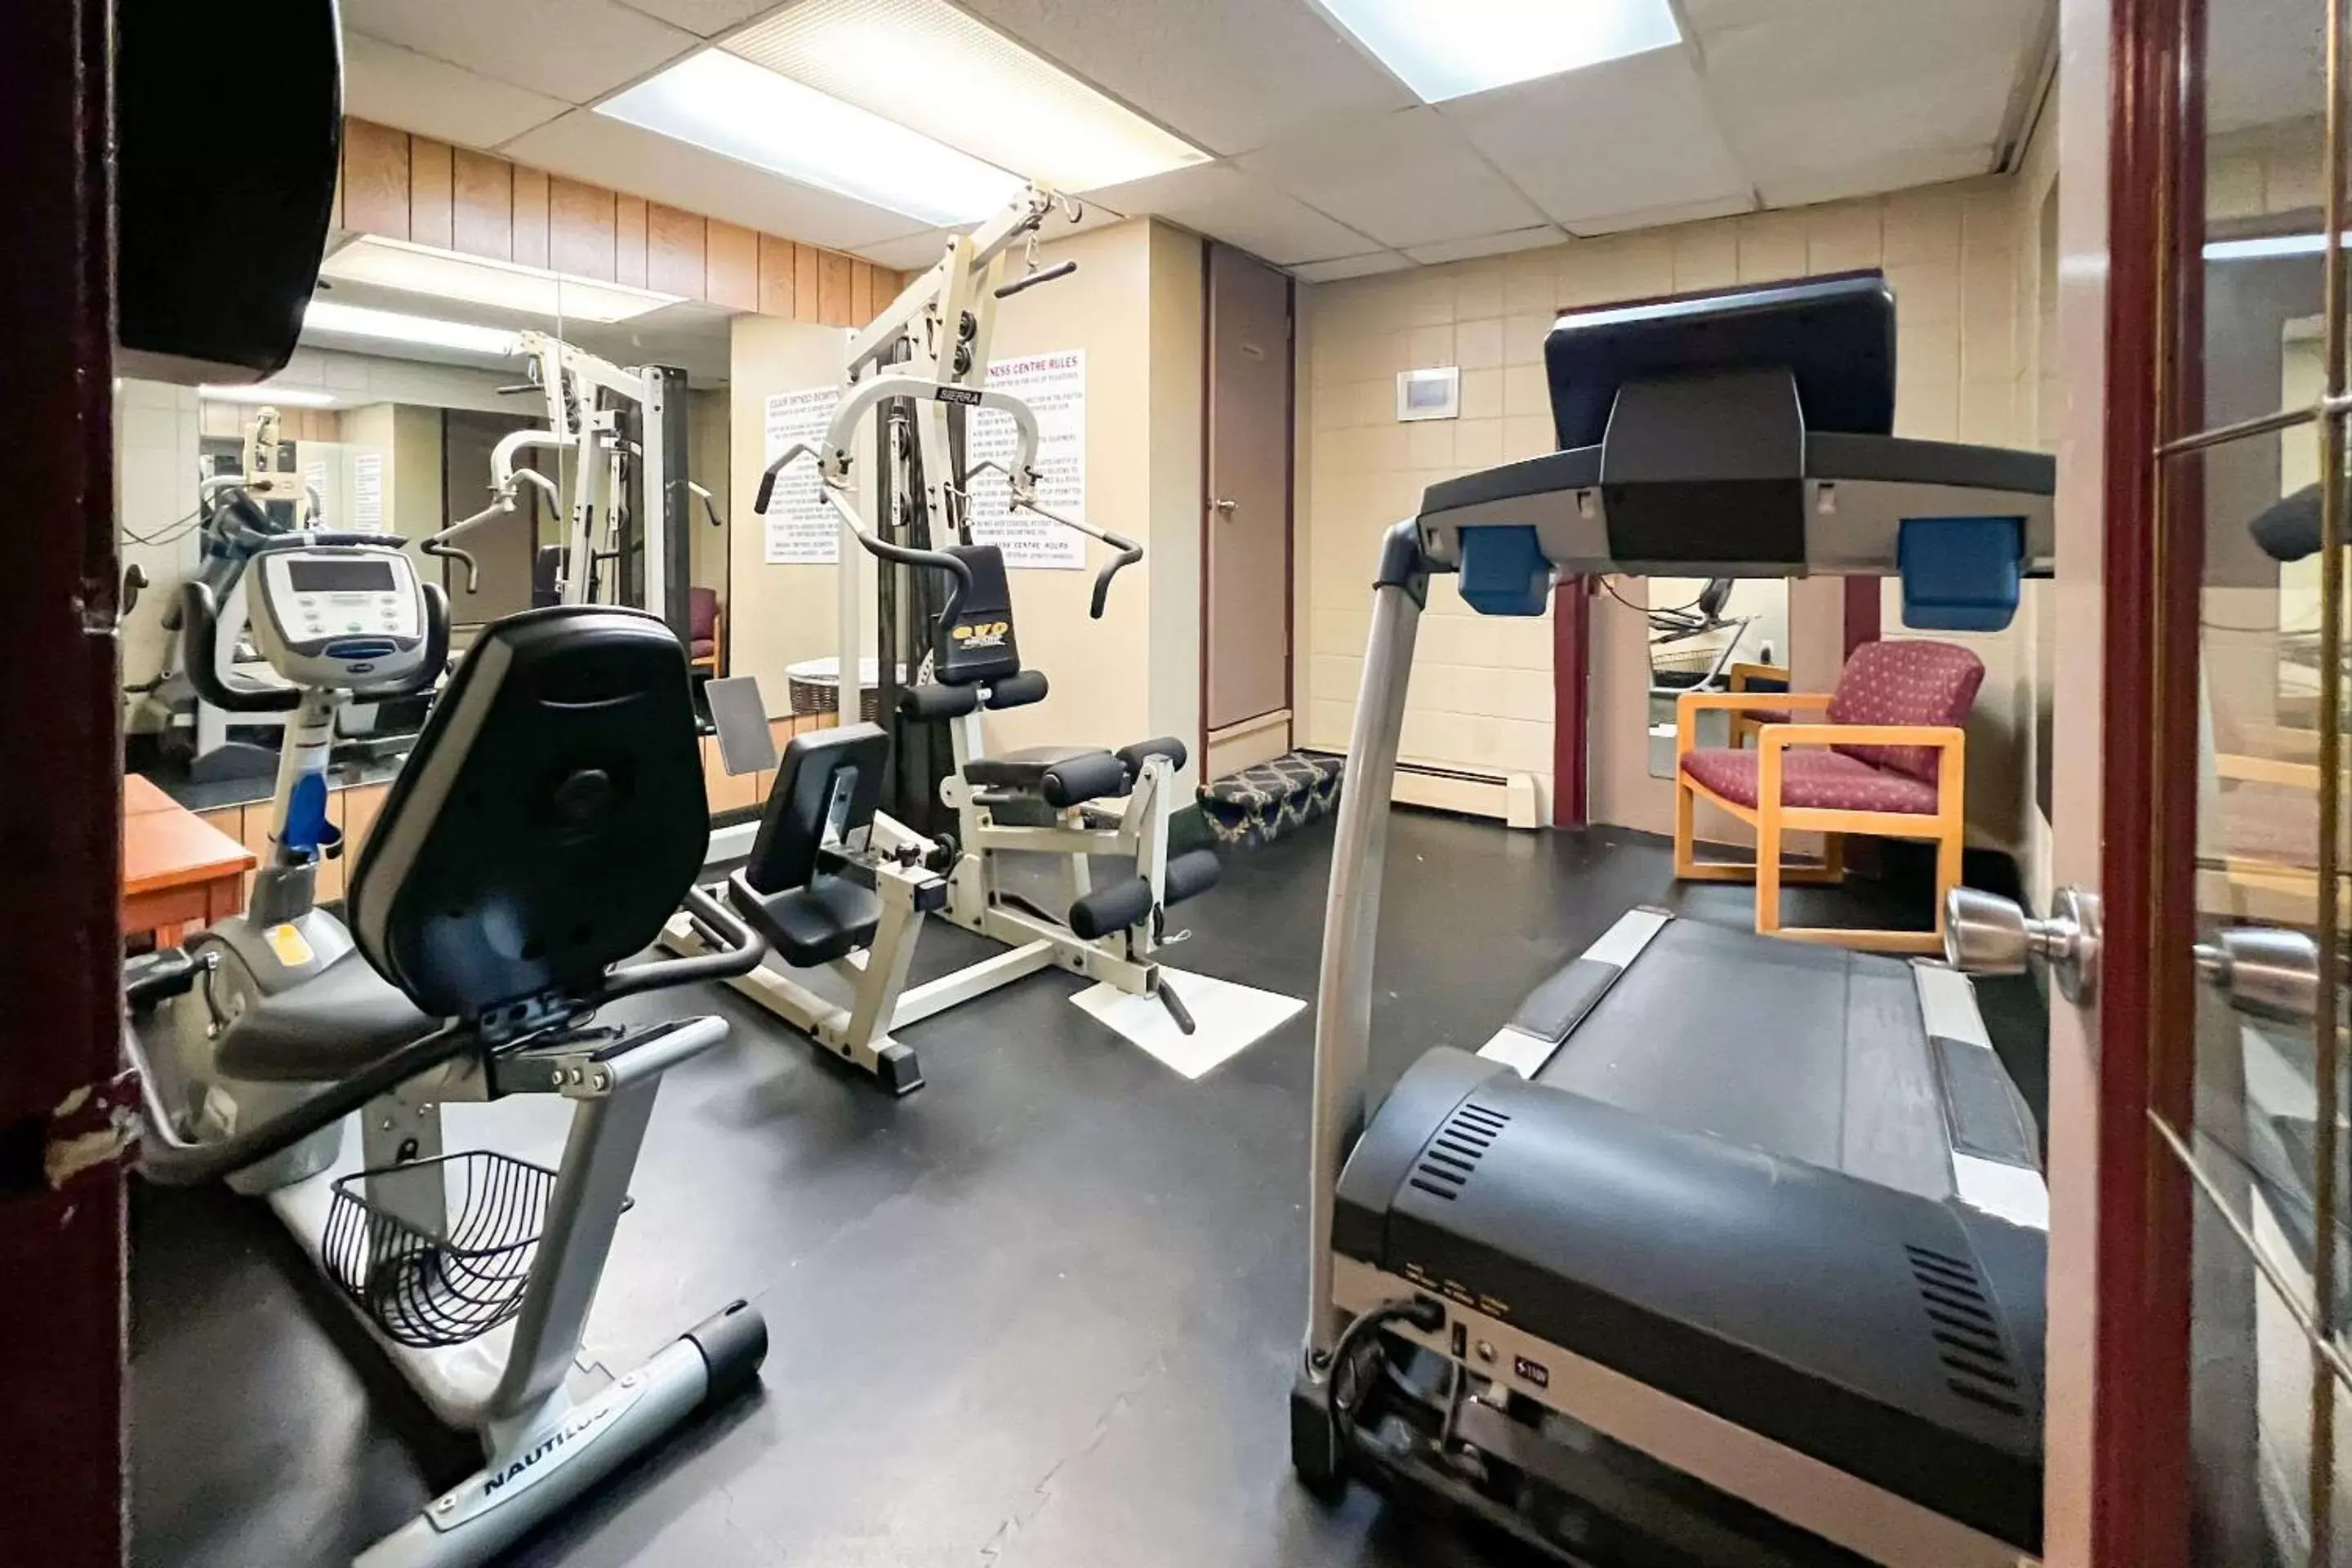 Fitness centre/facilities, Fitness Center/Facilities in Econo Lodge Motel Village